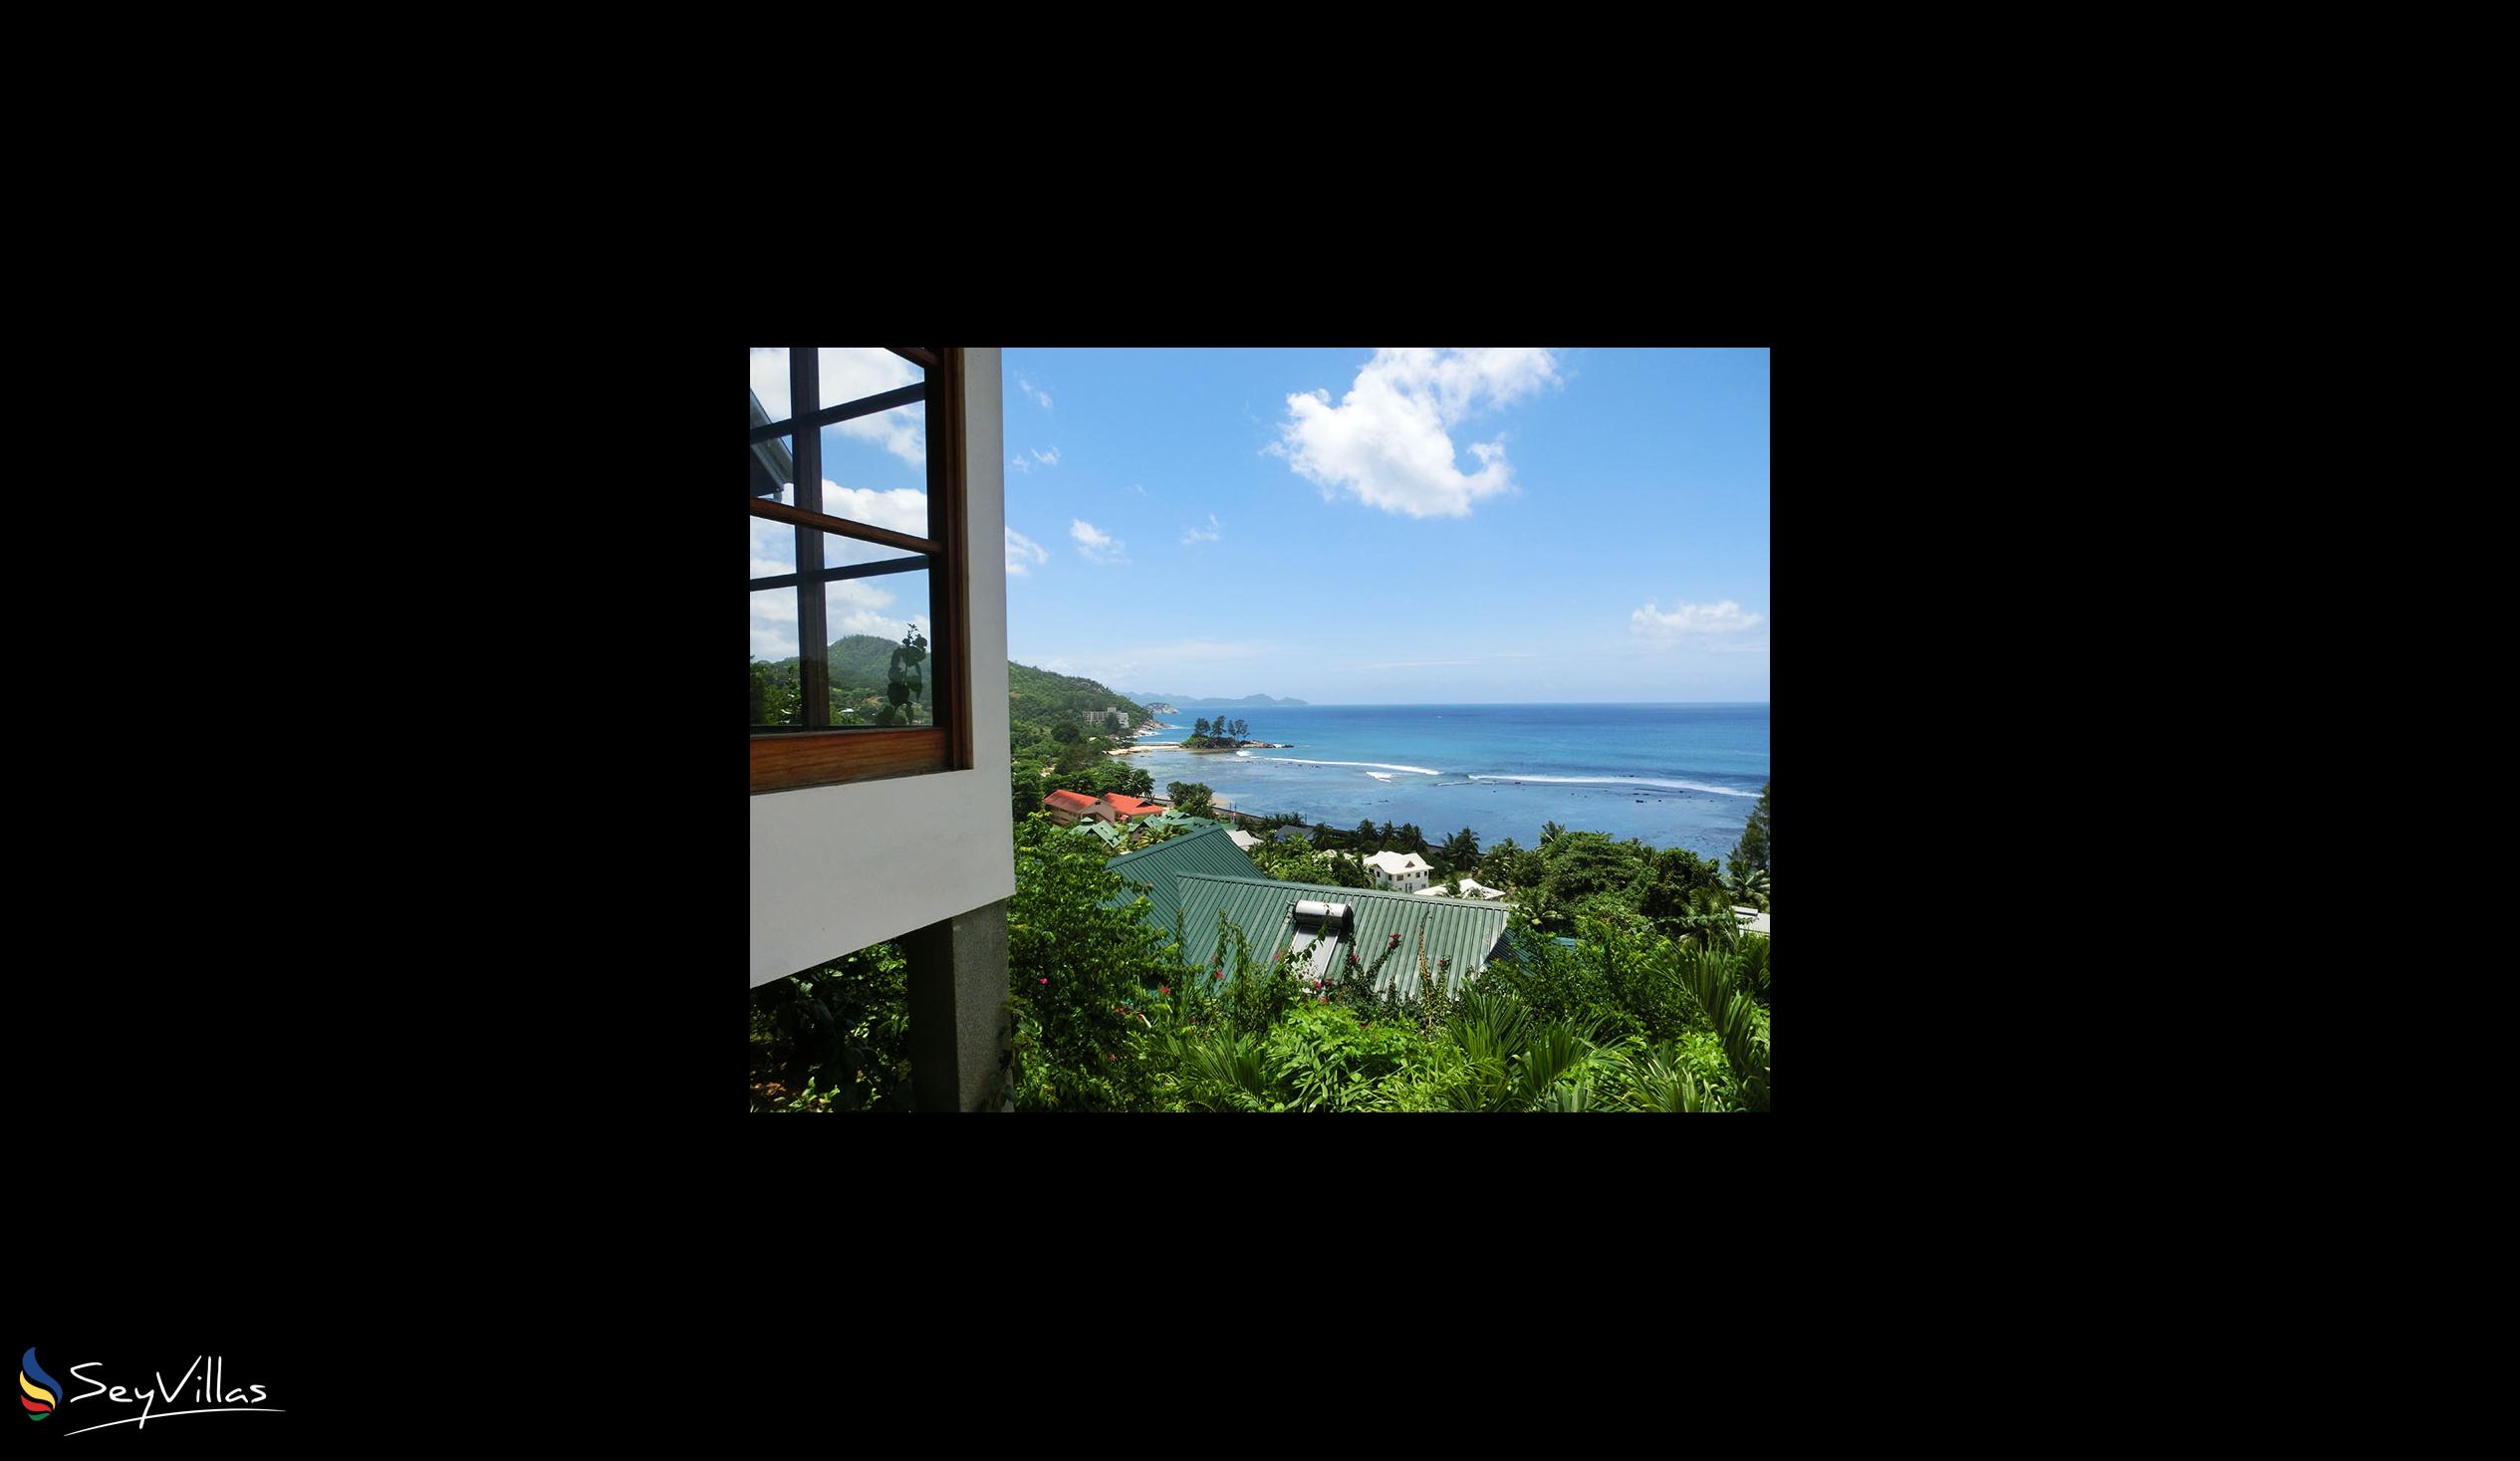 Foto 5: Villas de Jardin - Aussenbereich - Mahé (Seychellen)